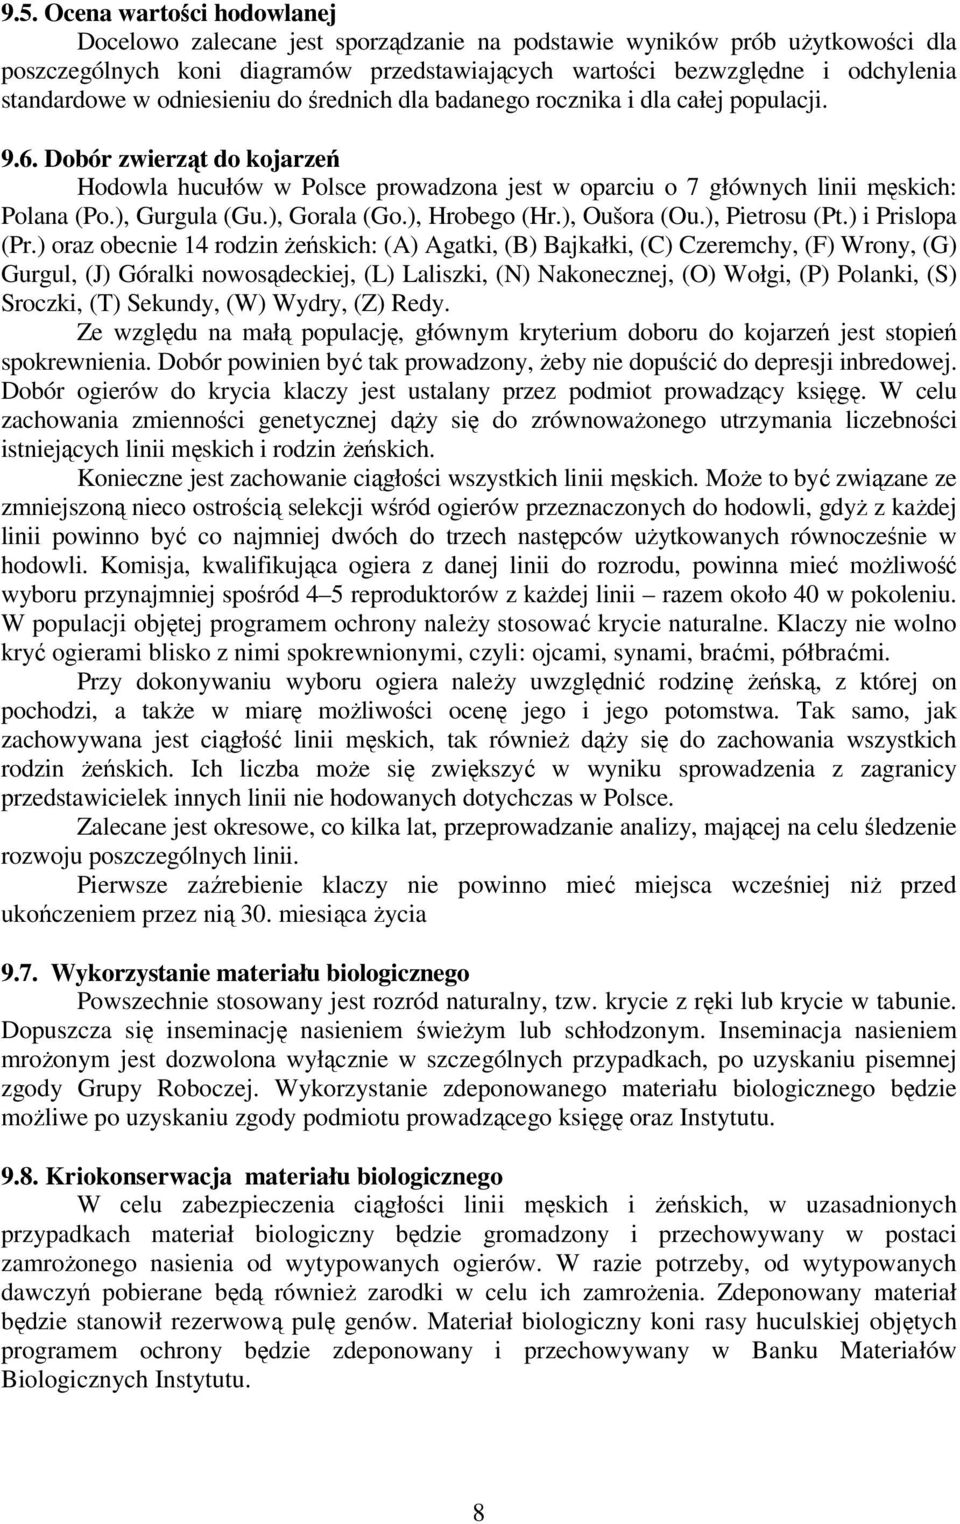 Dobór zwierząt do kojarzeń Hodowla hucułów w Polsce prowadzona jest w oparciu o 7 głównych linii męskich: Polana (Po.), Gurgula (Gu.), Gorala (Go.), Hrobego (Hr.), Oušora (Ou.), Pietrosu (Pt.